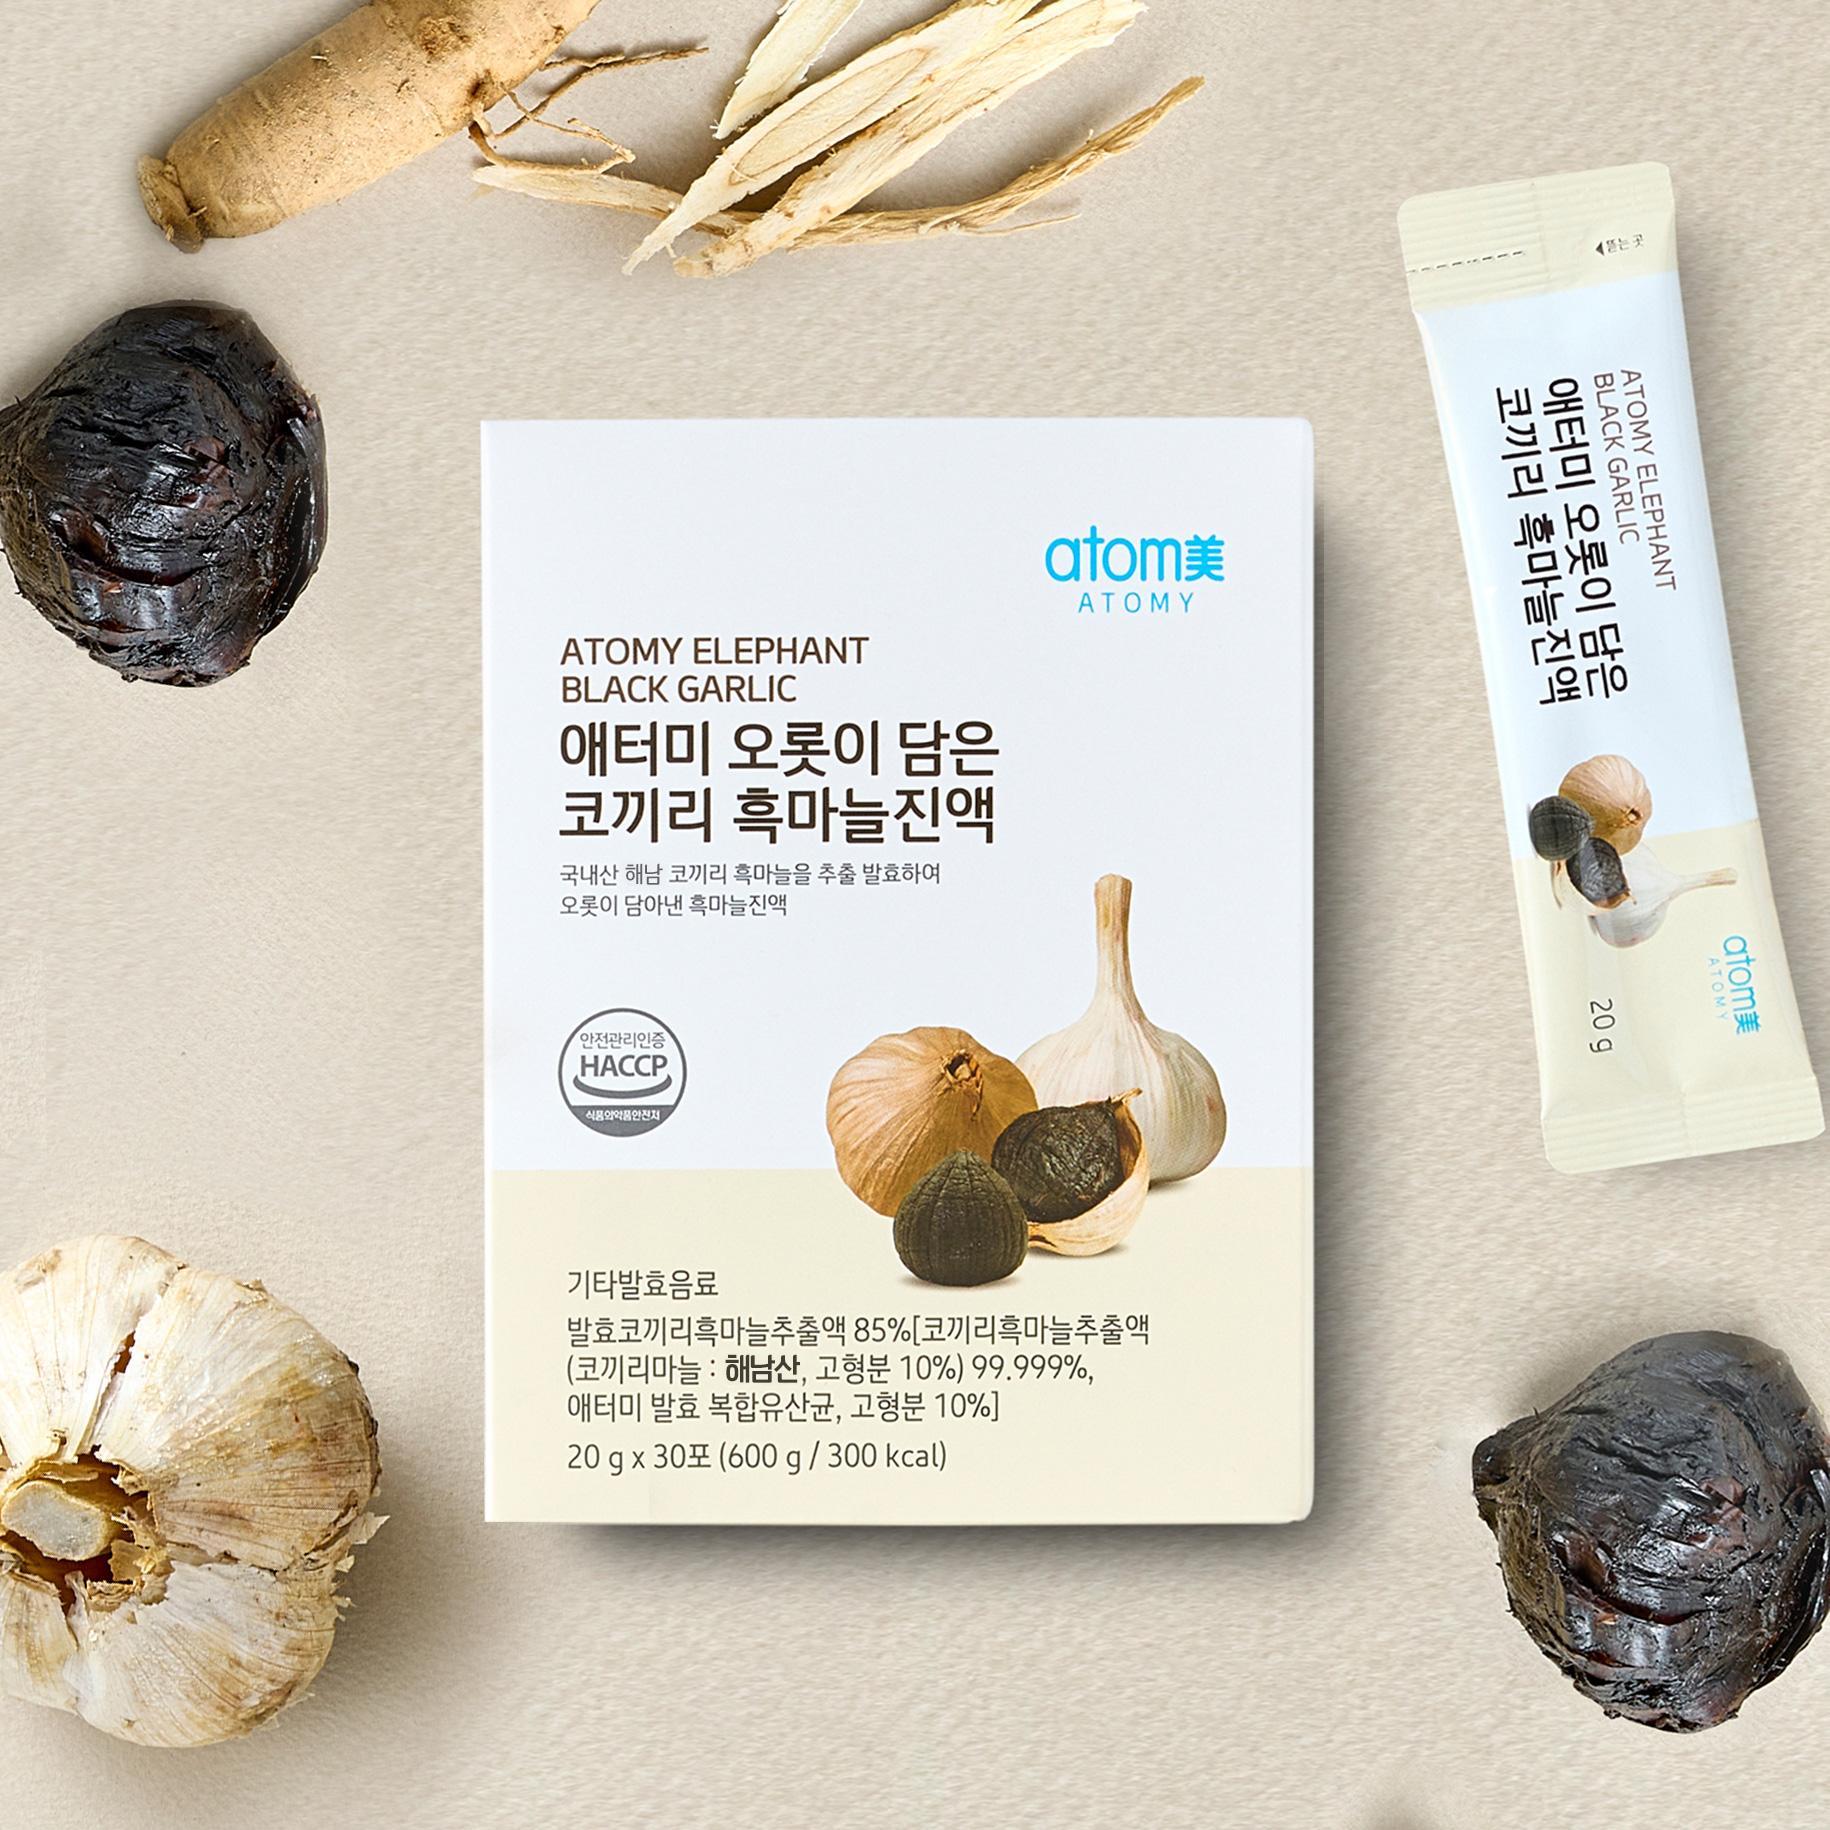 Nước tỏi đen Atomy Elephant Black Garlic Hàn Quốc